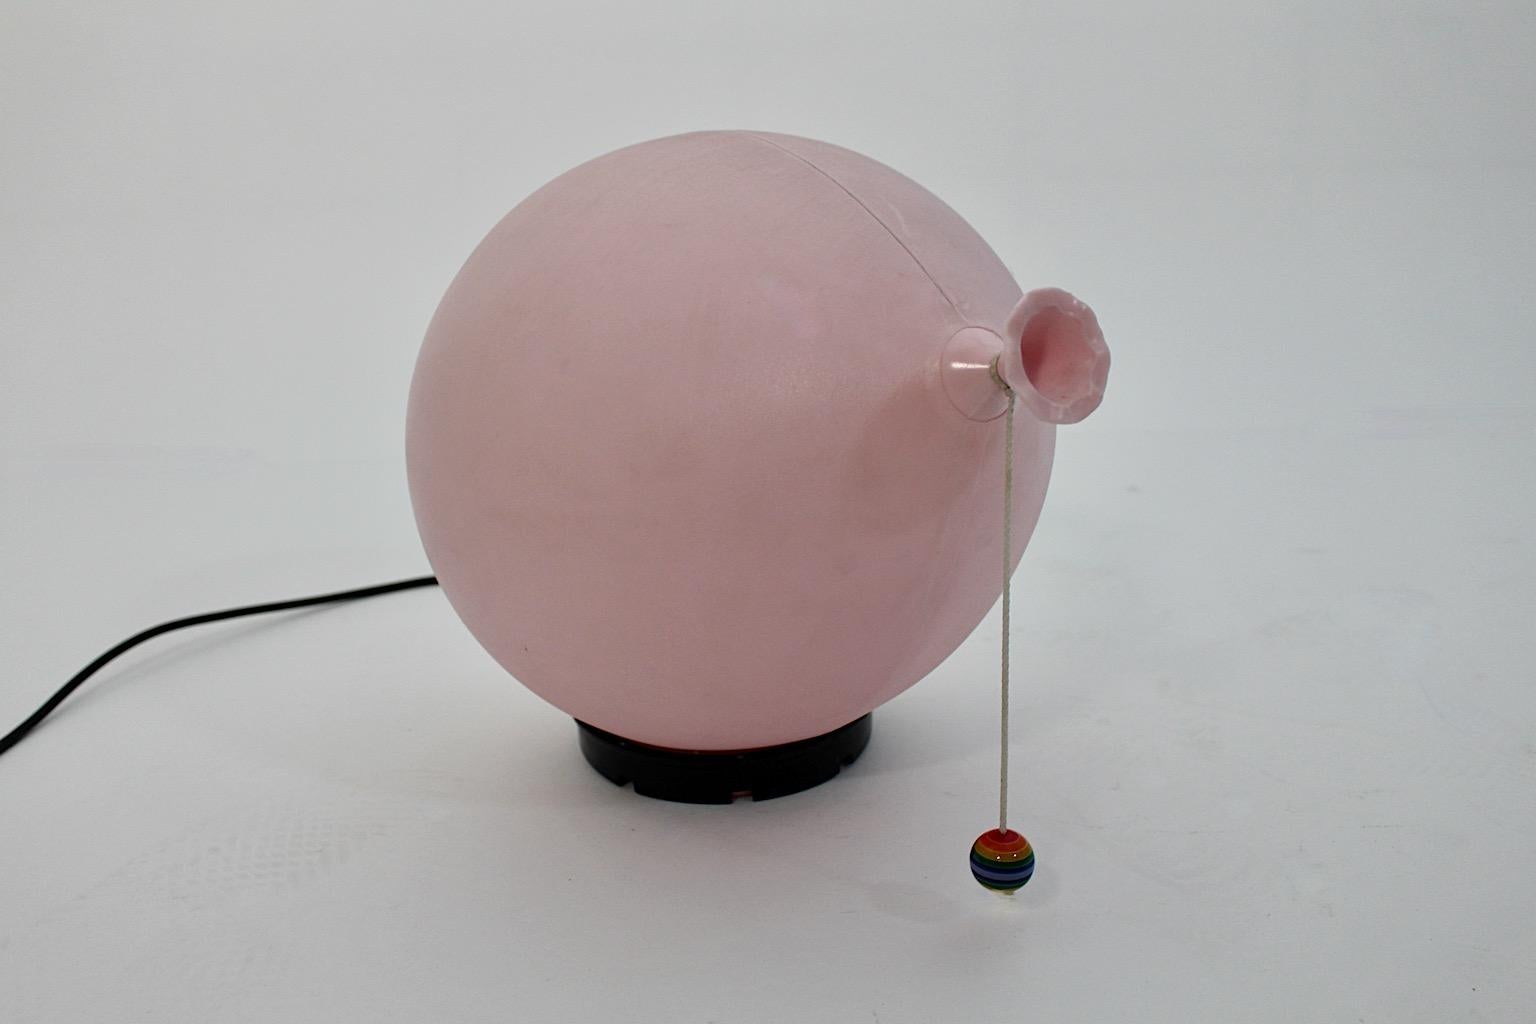 Lampe de table, applique ou éclairage mural vintage moderne italien en forme de ballon en plastique rose par Yves Christin pour Bilumen, années 1980, Italie.
Une superbe lampe de table en forme de ballon en plastique de couleur rose pastel avec